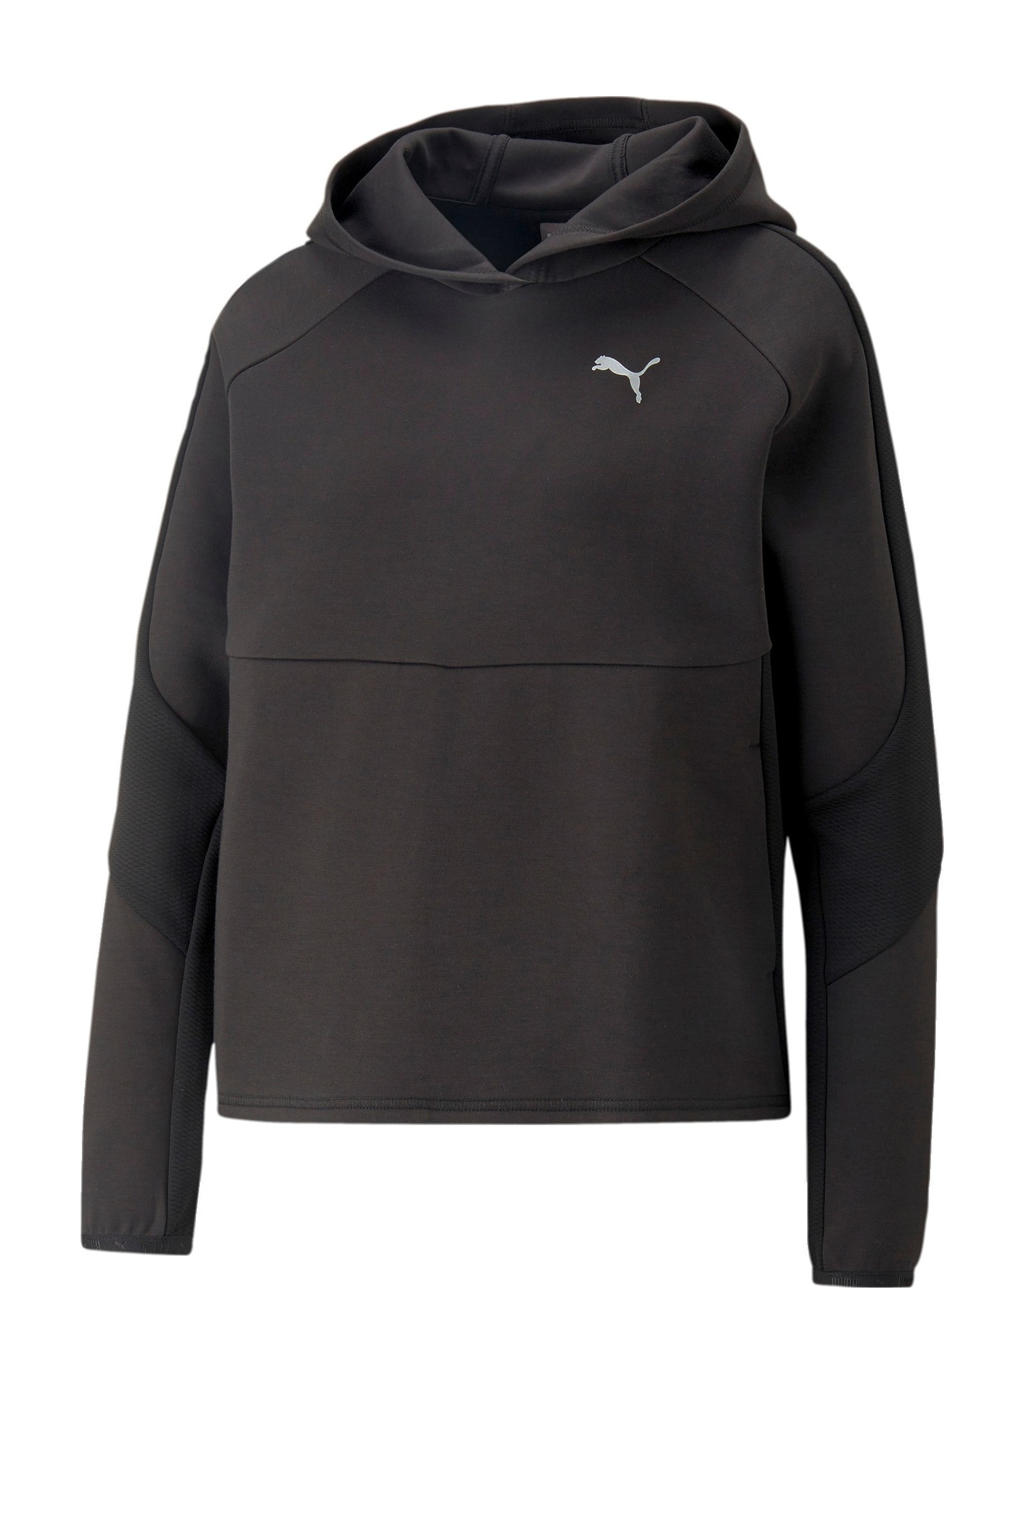 Zwarte dames Puma hoodie van katoen met logo dessin, lange mouwen en capuchon